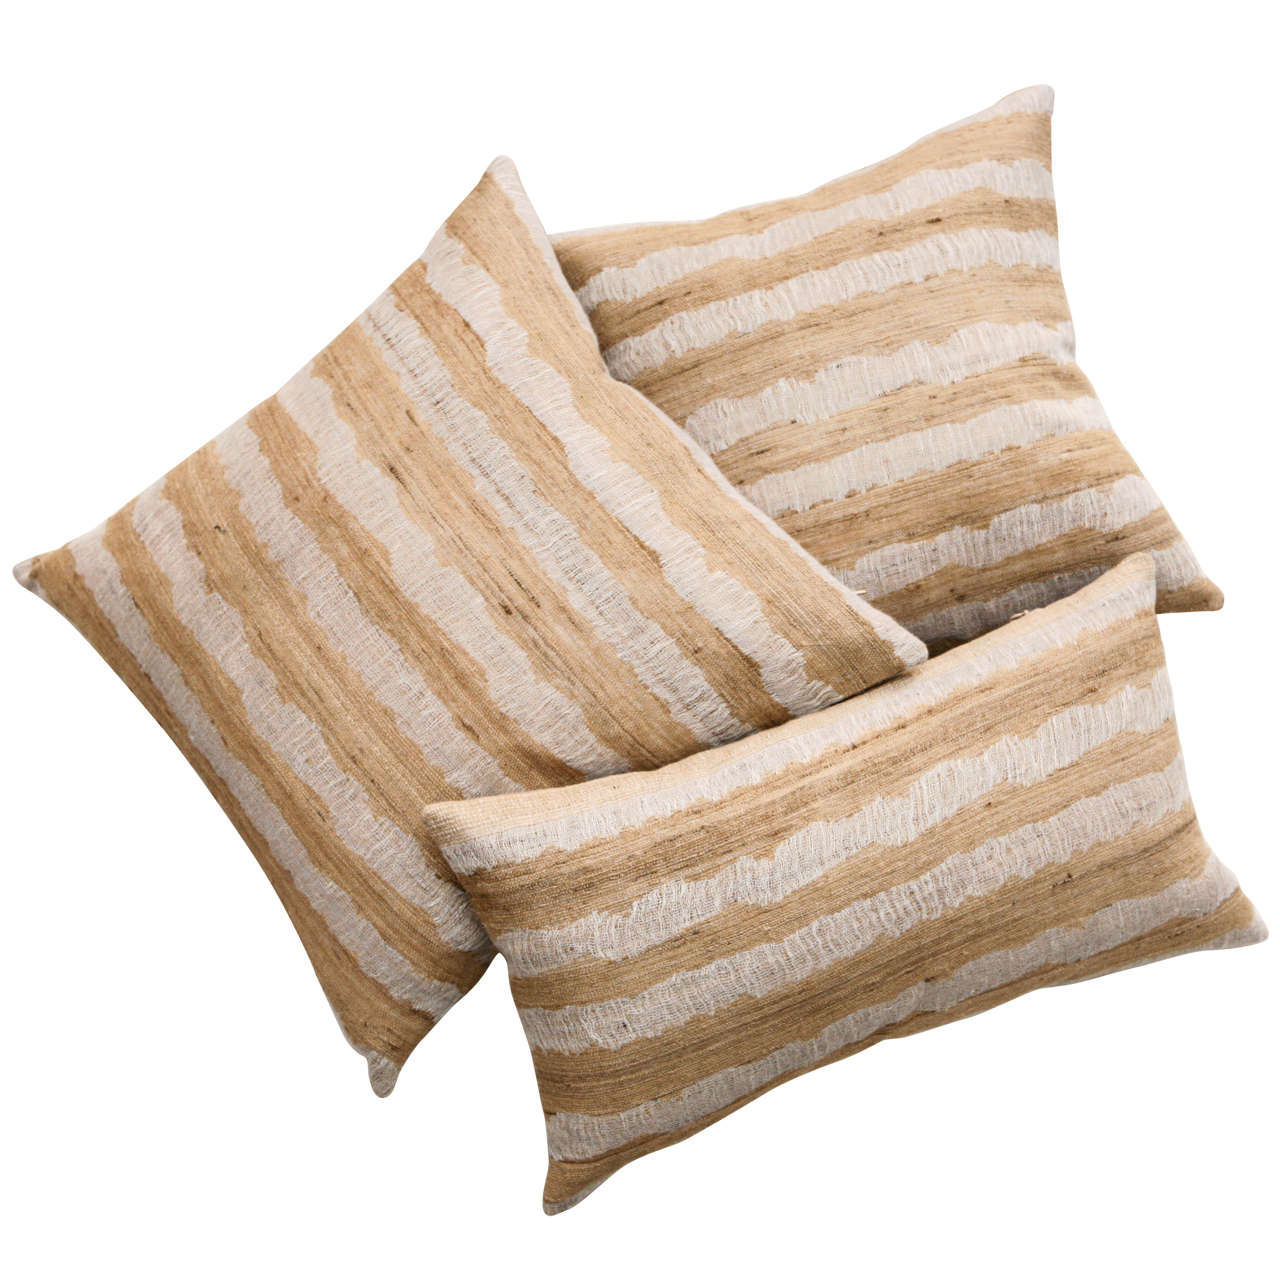 Indian Raw Tusser Silk & Linen Pillows.